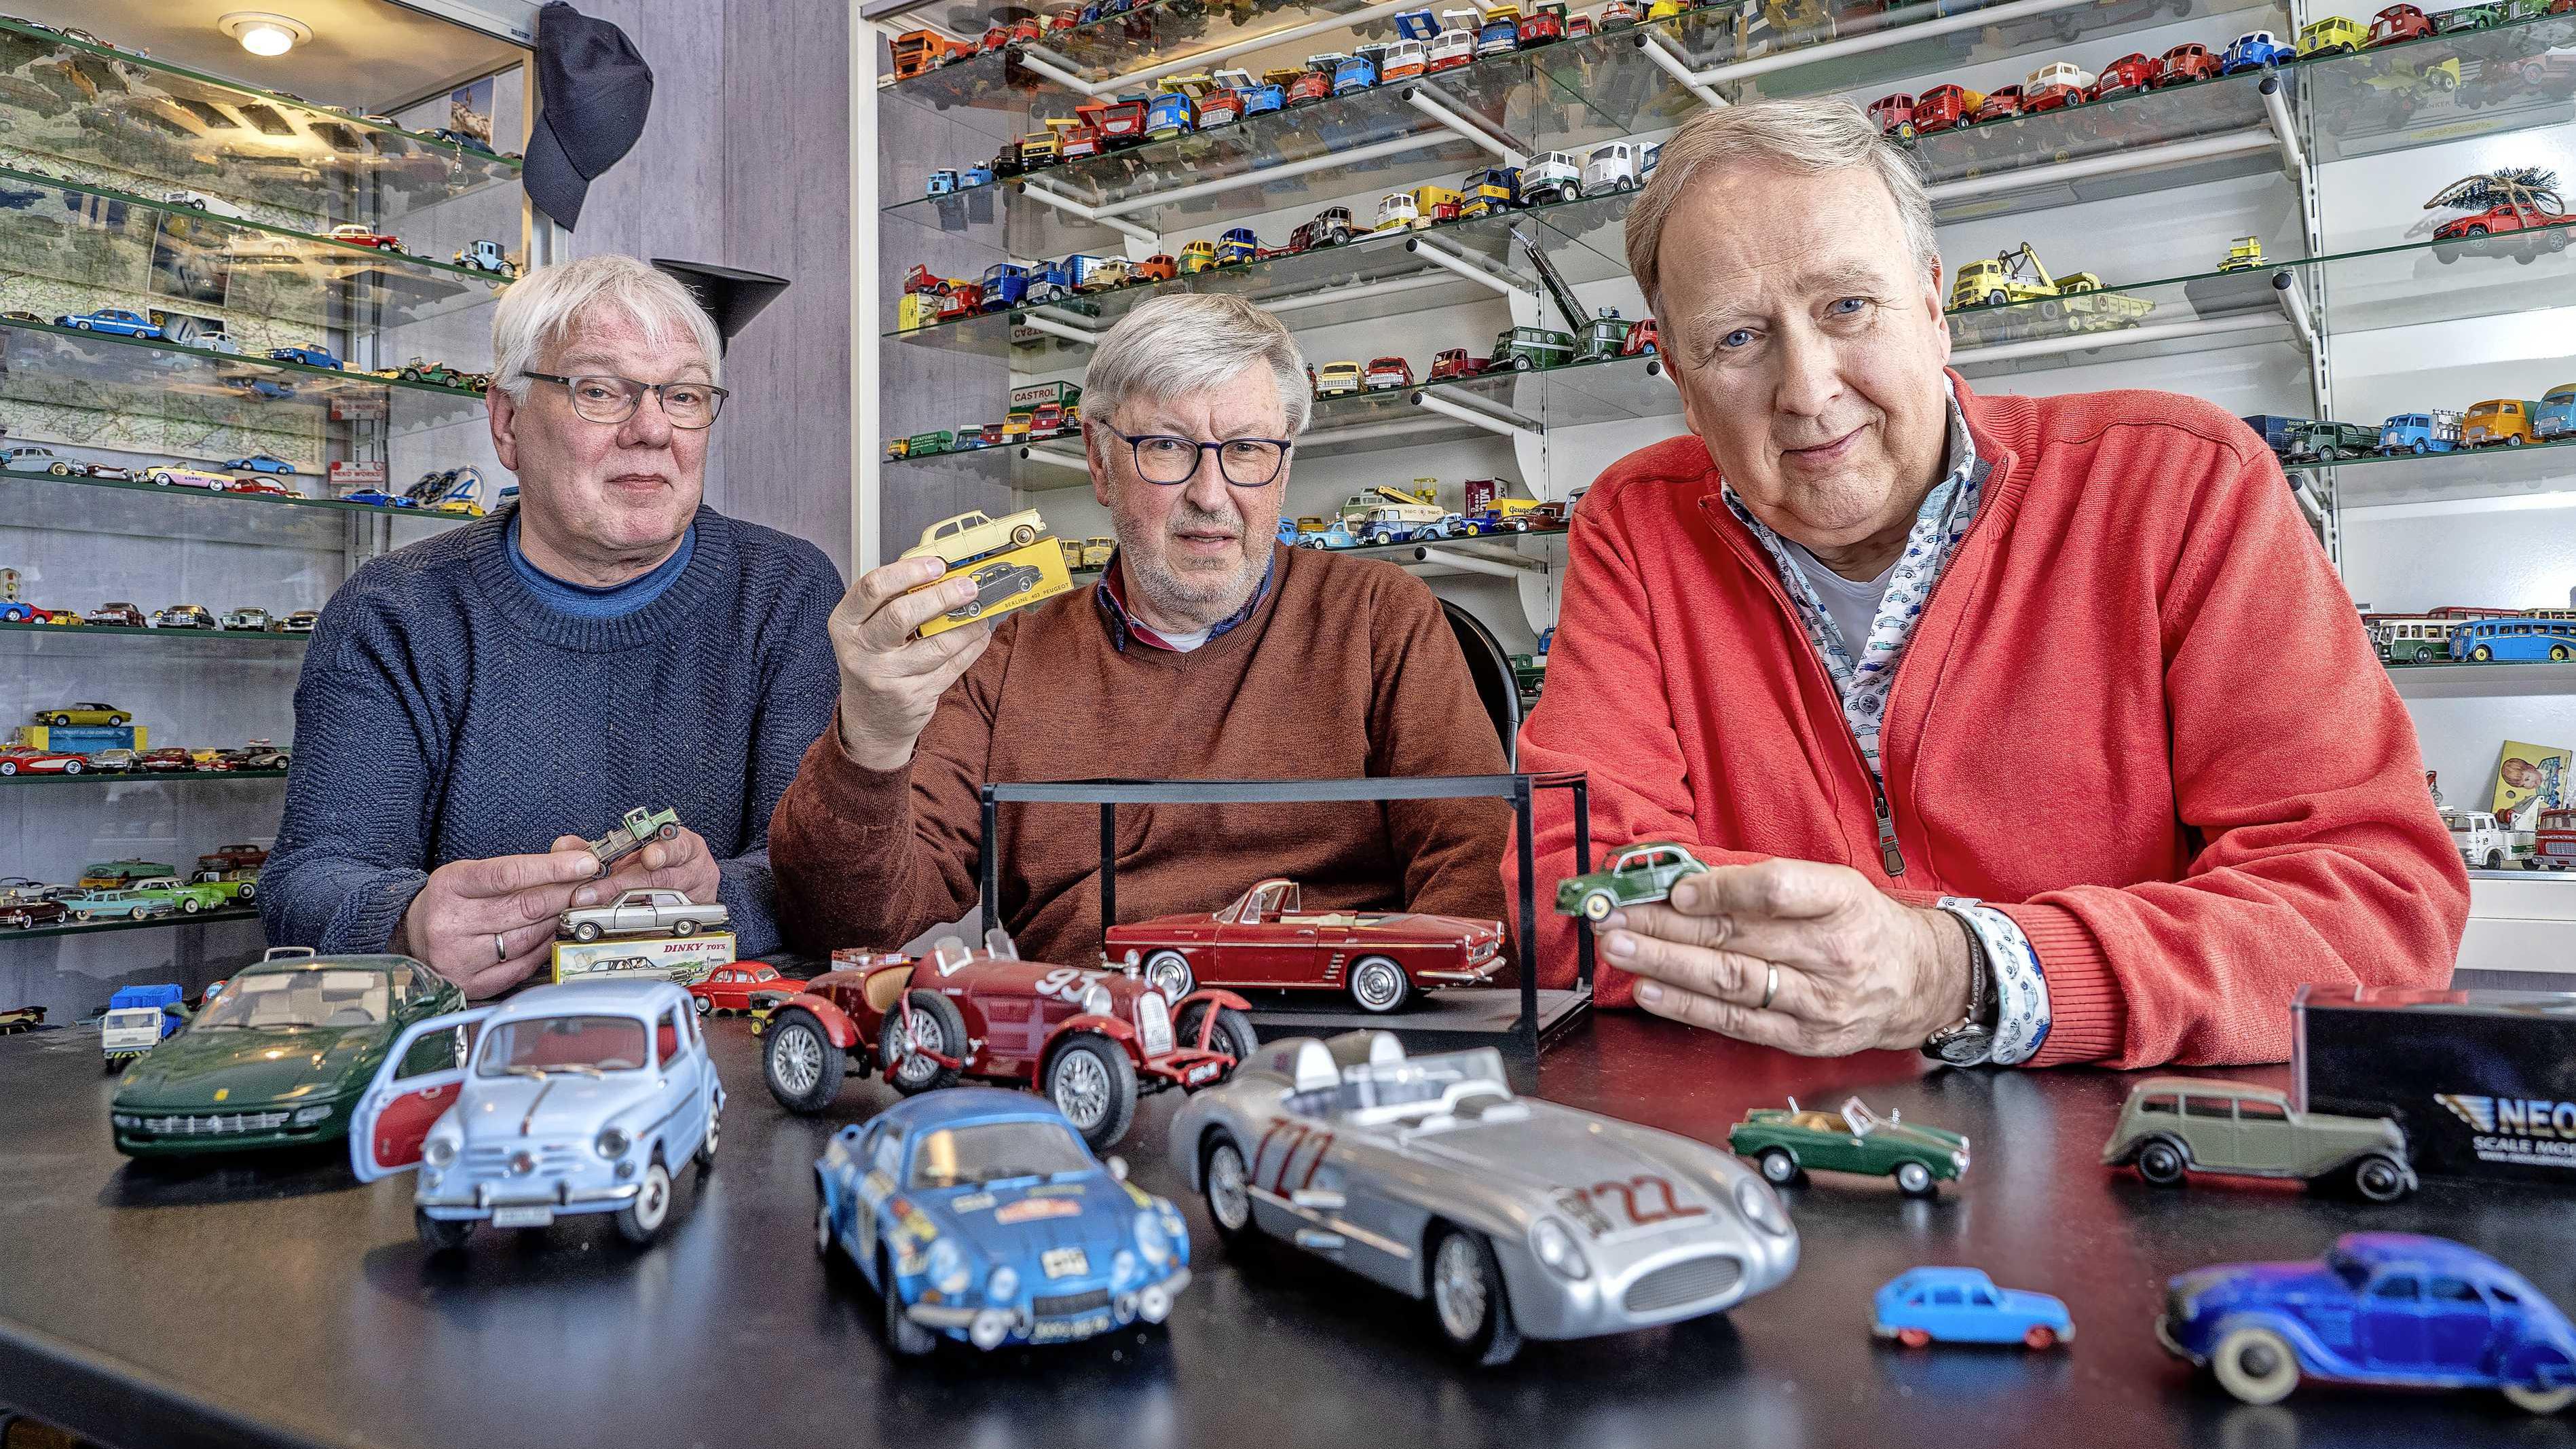 Kleine auto's grote hobby: een kijkje in de de modelauto | Thuis & | Telegraaf.nl